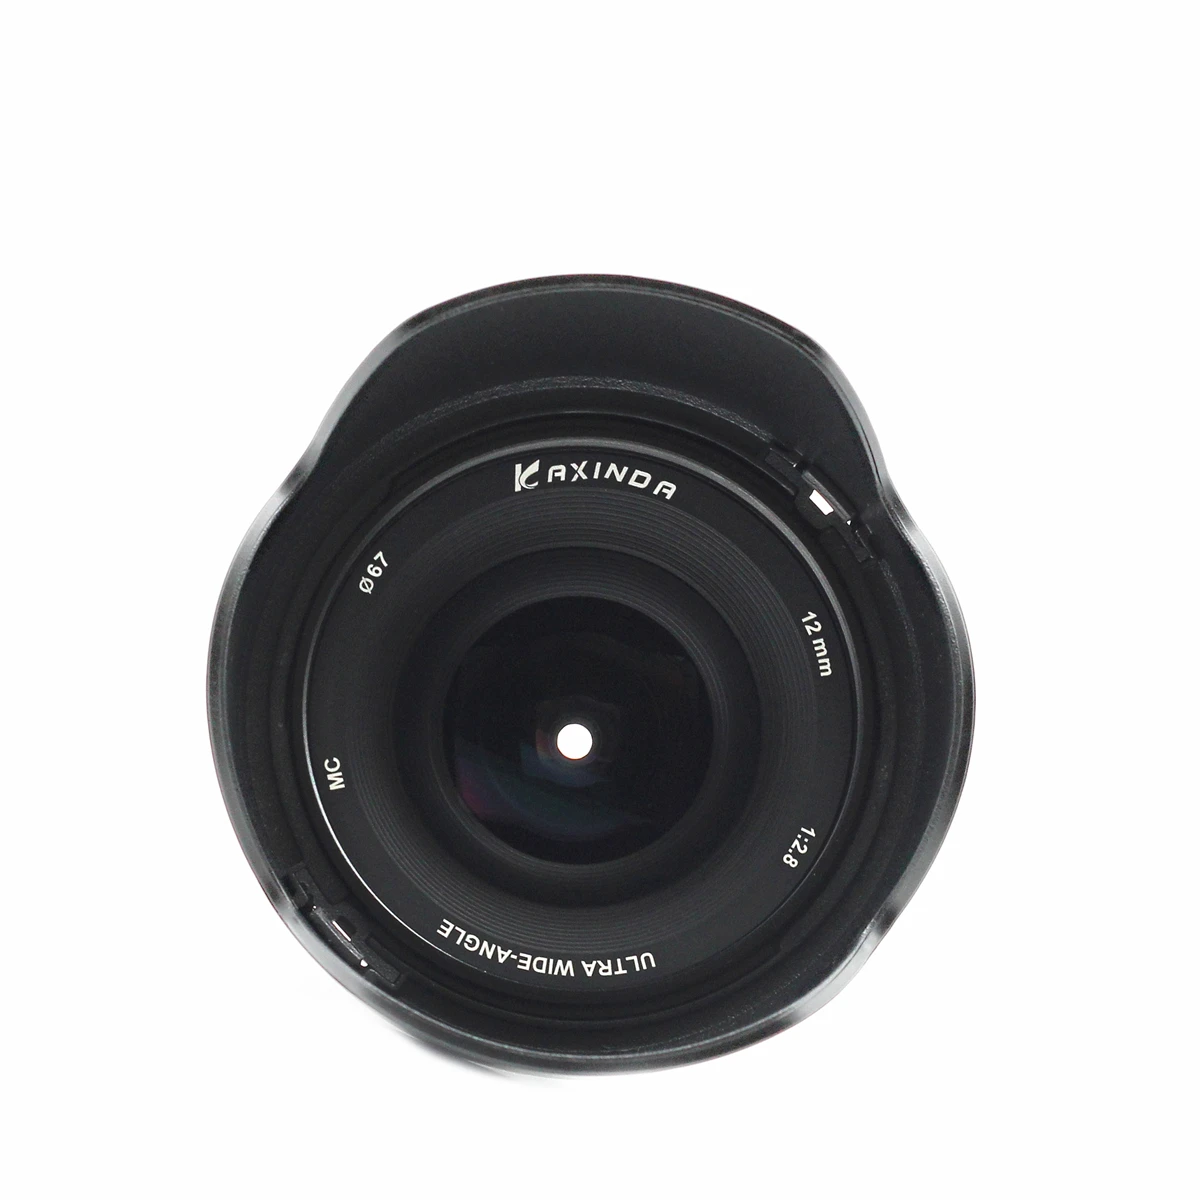 12mm f/2.8 Wide Angle Manual MFT Lens for Panasonic Olympus M43 Micro 4/3 E-P5 E-M5 E-M10 Mark II III GX9 GX85 G90 G9 12 mm F2.8